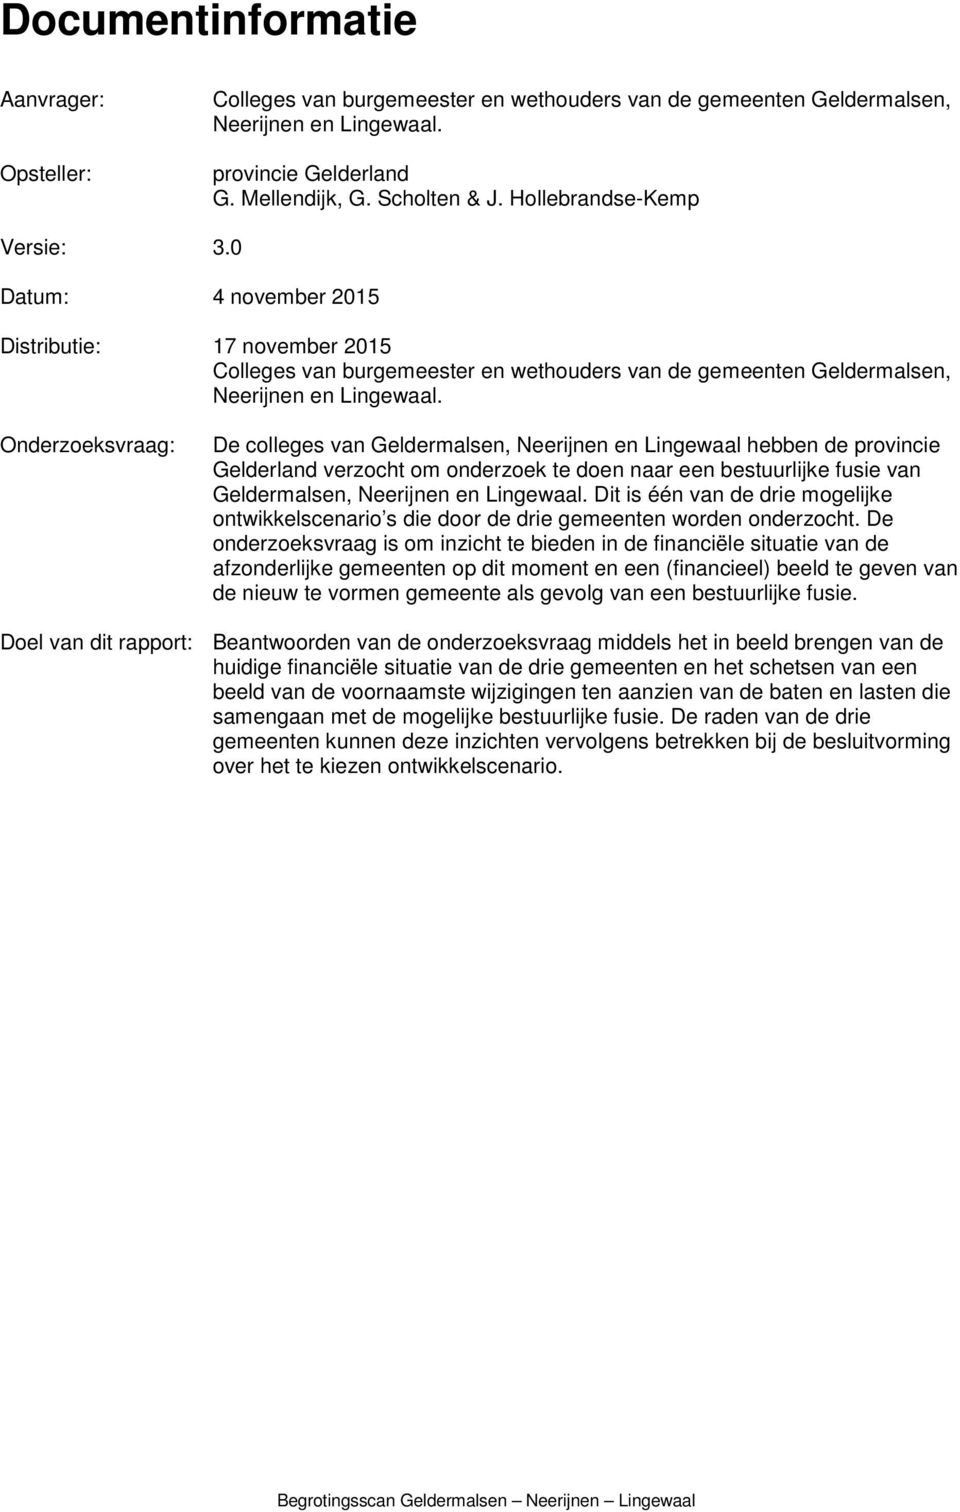 Onderzoeksvraag: De colleges van Geldermalsen, Neerijnen en Lingewaal hebben de provincie Gelderland verzocht om onderzoek te doen naar een bestuurlijke fusie van Geldermalsen, Neerijnen en Lingewaal.